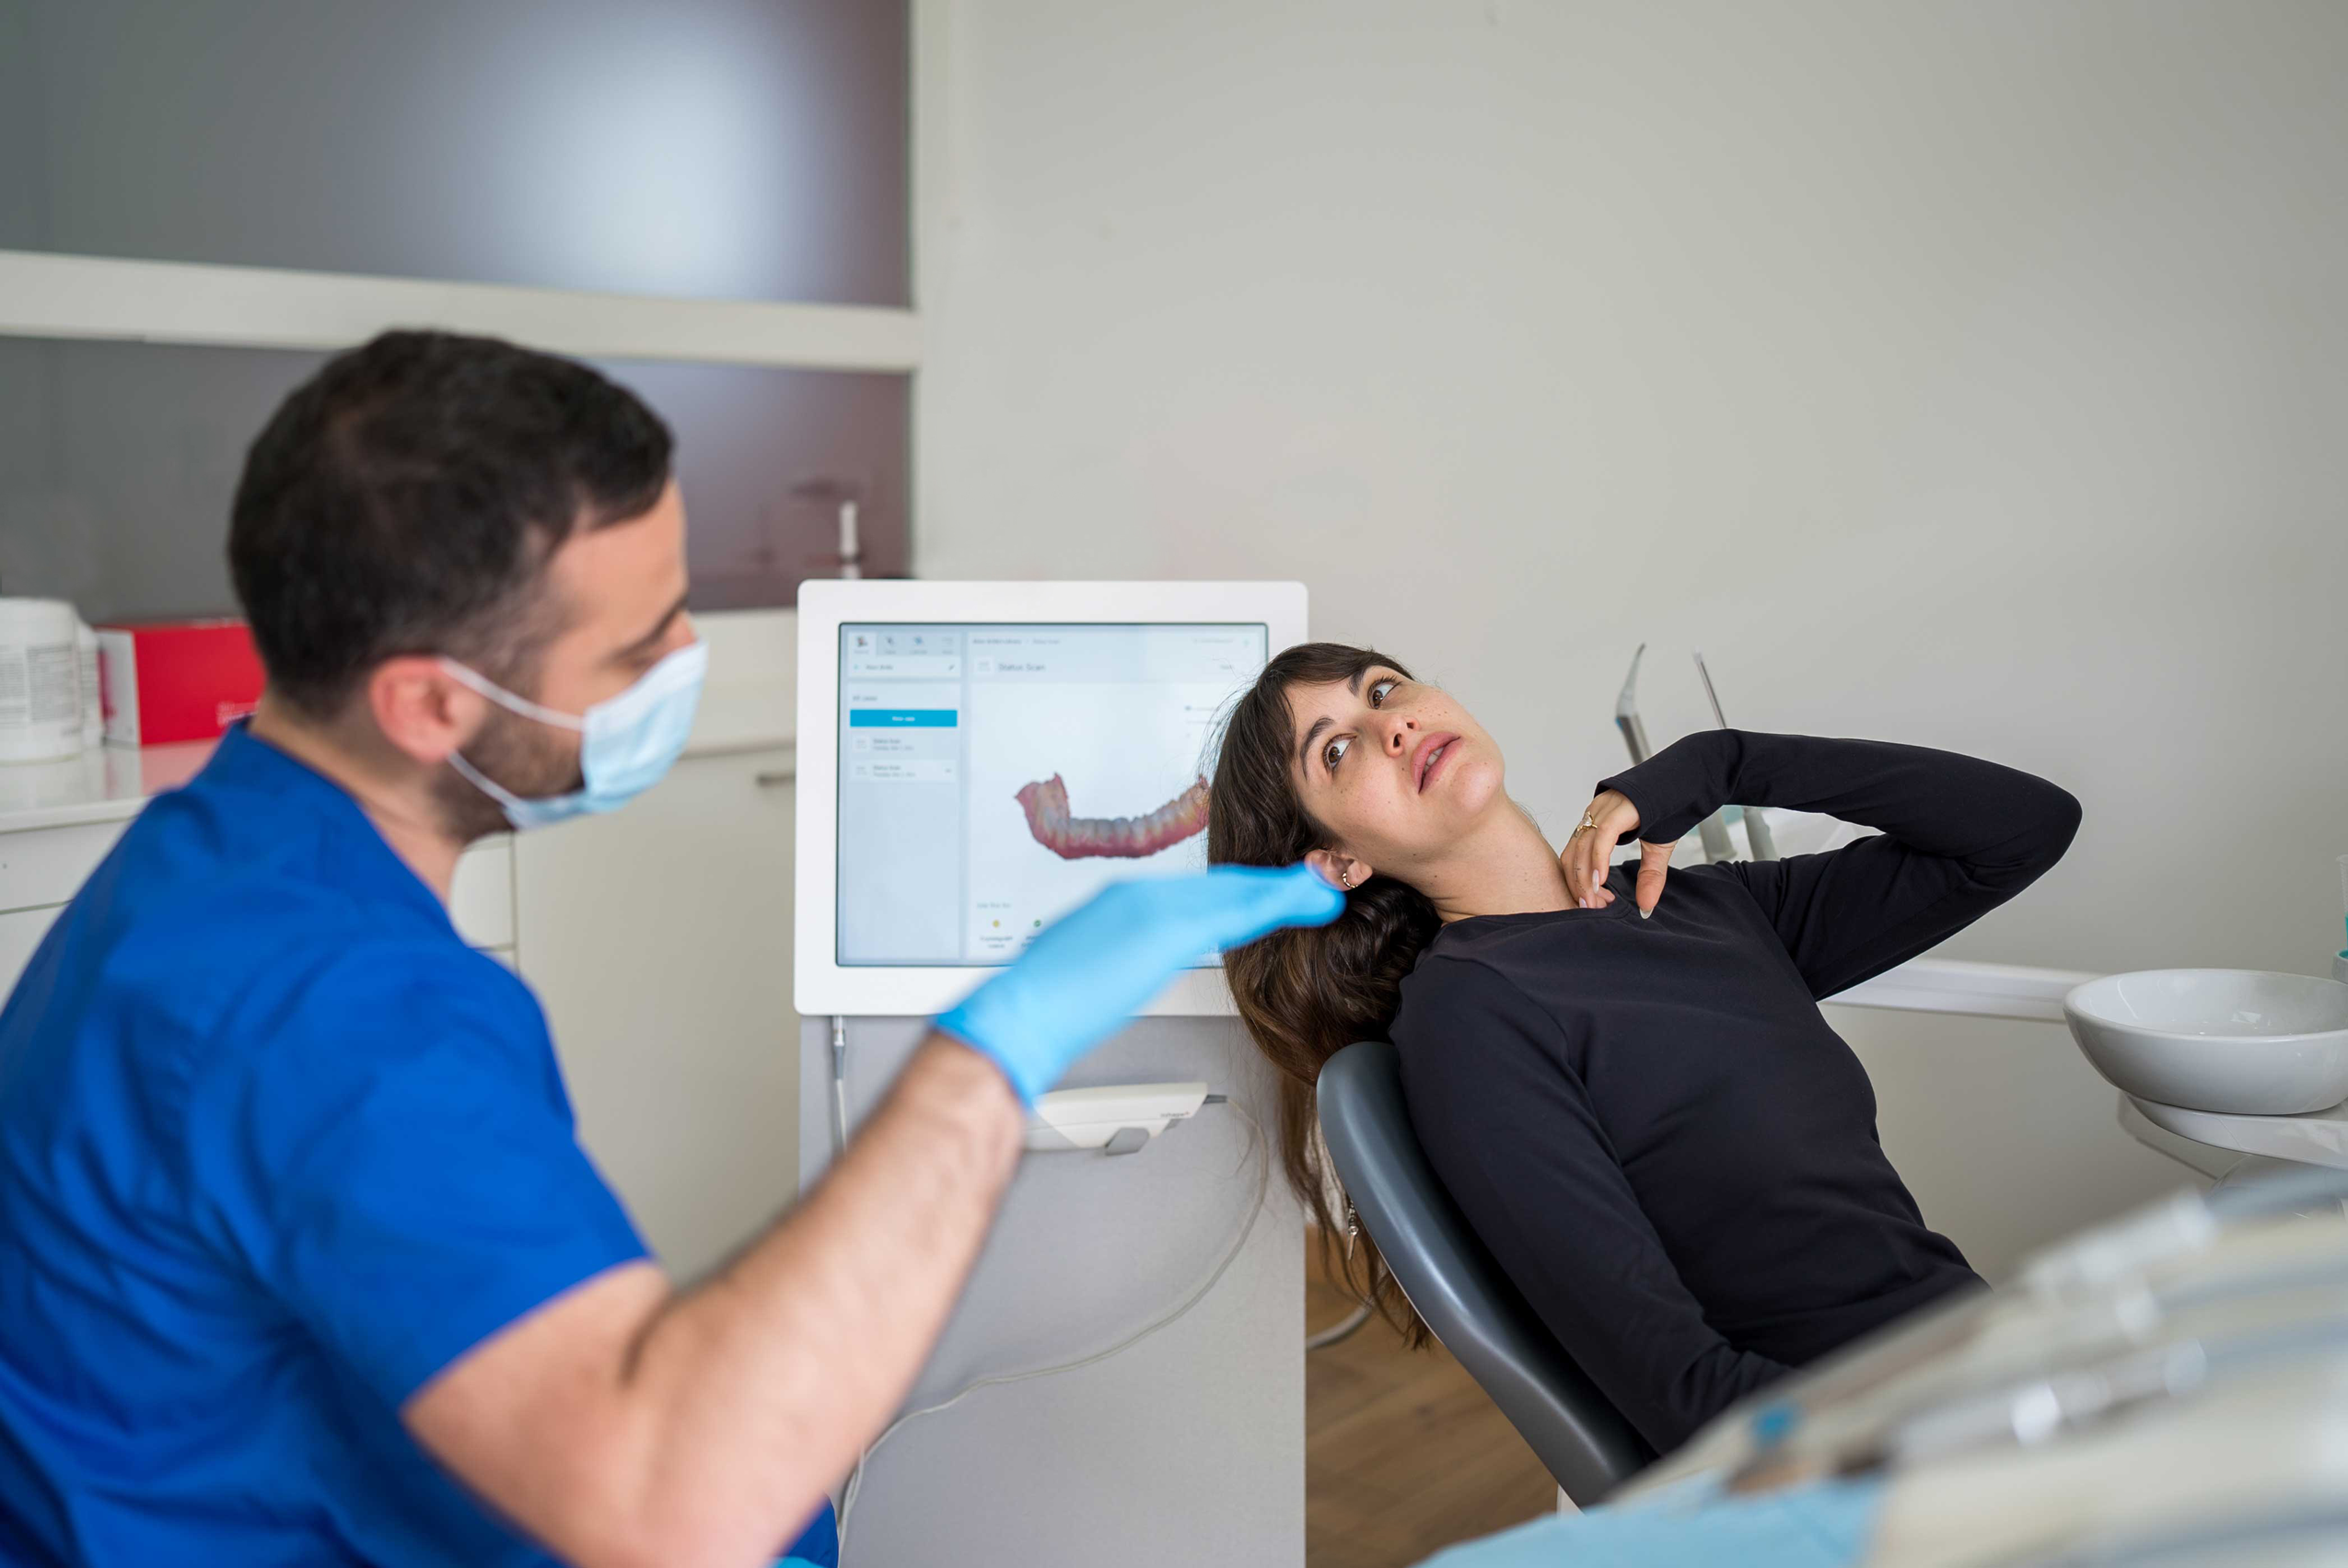 طبيب أسنان يجري مسحاً لأسنان المريض في عيادة متخصصة ويظهر شكل الأسنان على شاشة صغيرة في الخلف